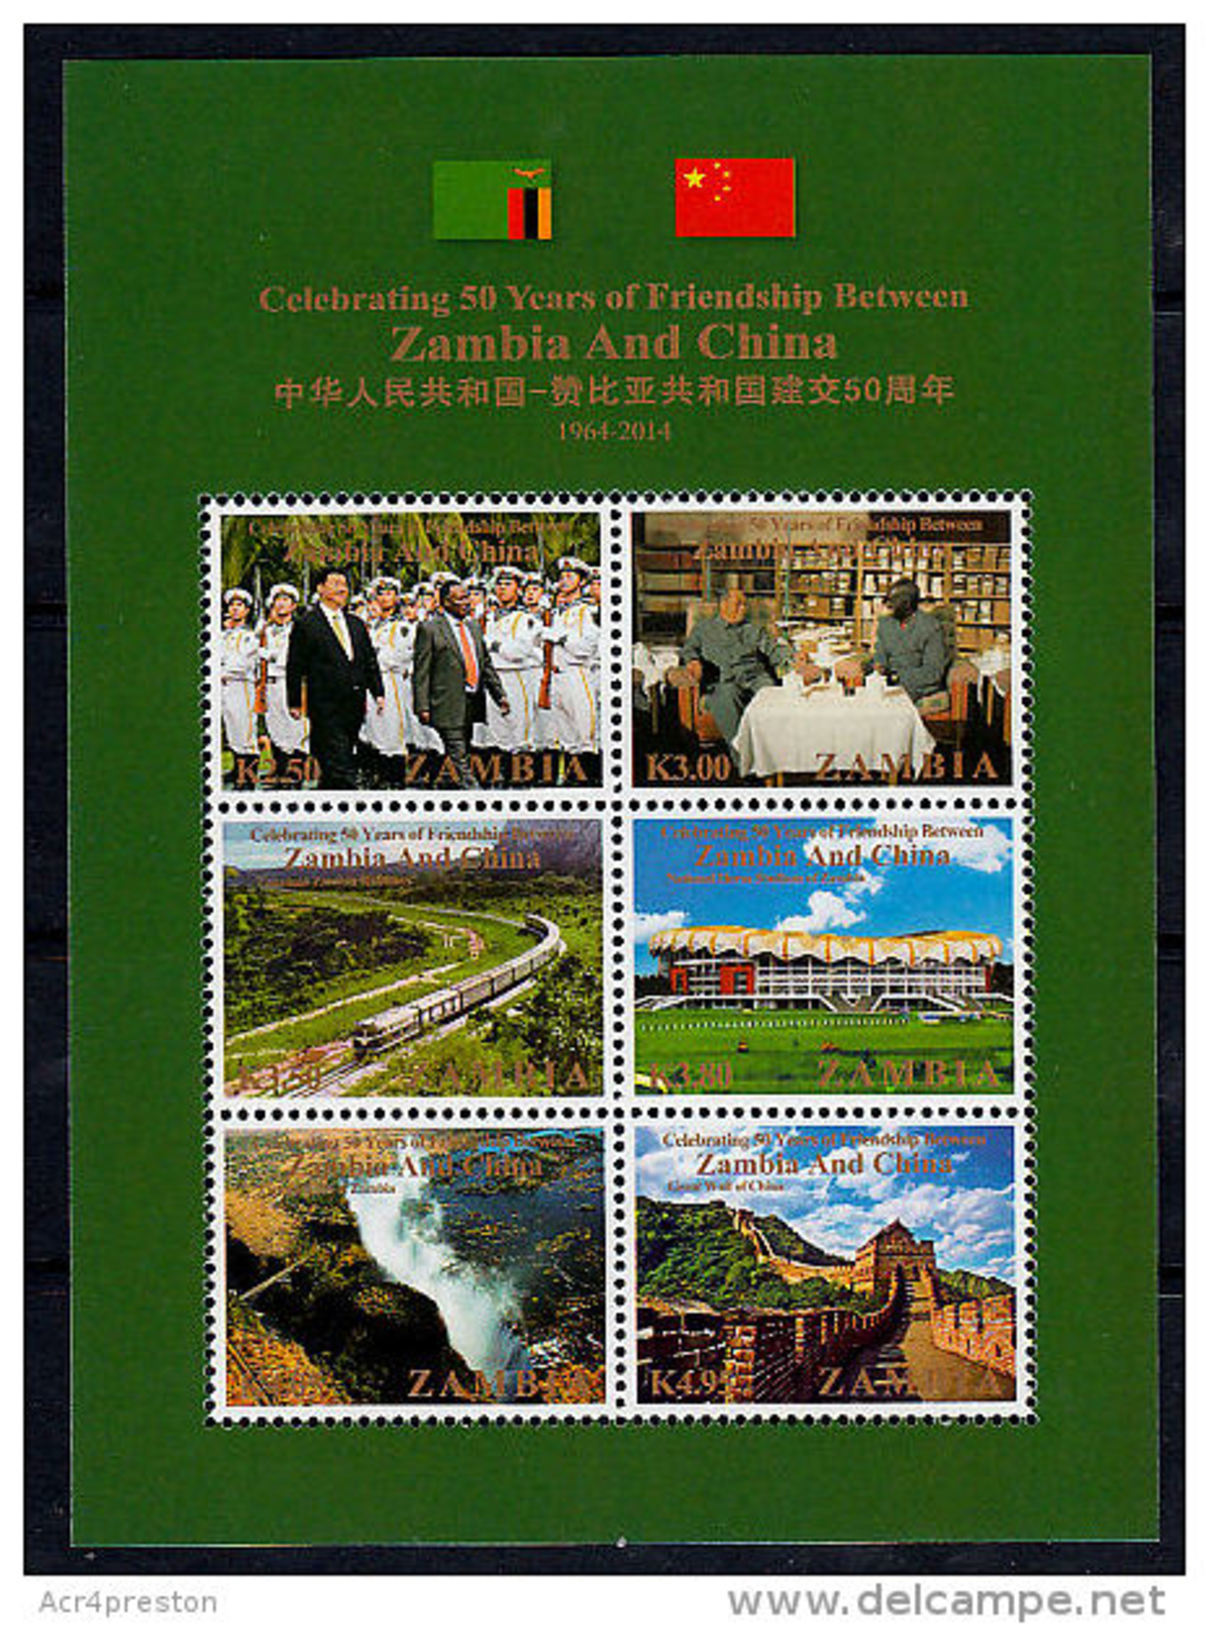 Zm9995 ZAMBIA 2015, NEW ISSUE, 50 Years Zambia & China Friendship, Miniature Sheet  MNH - Zambia (1965-...)